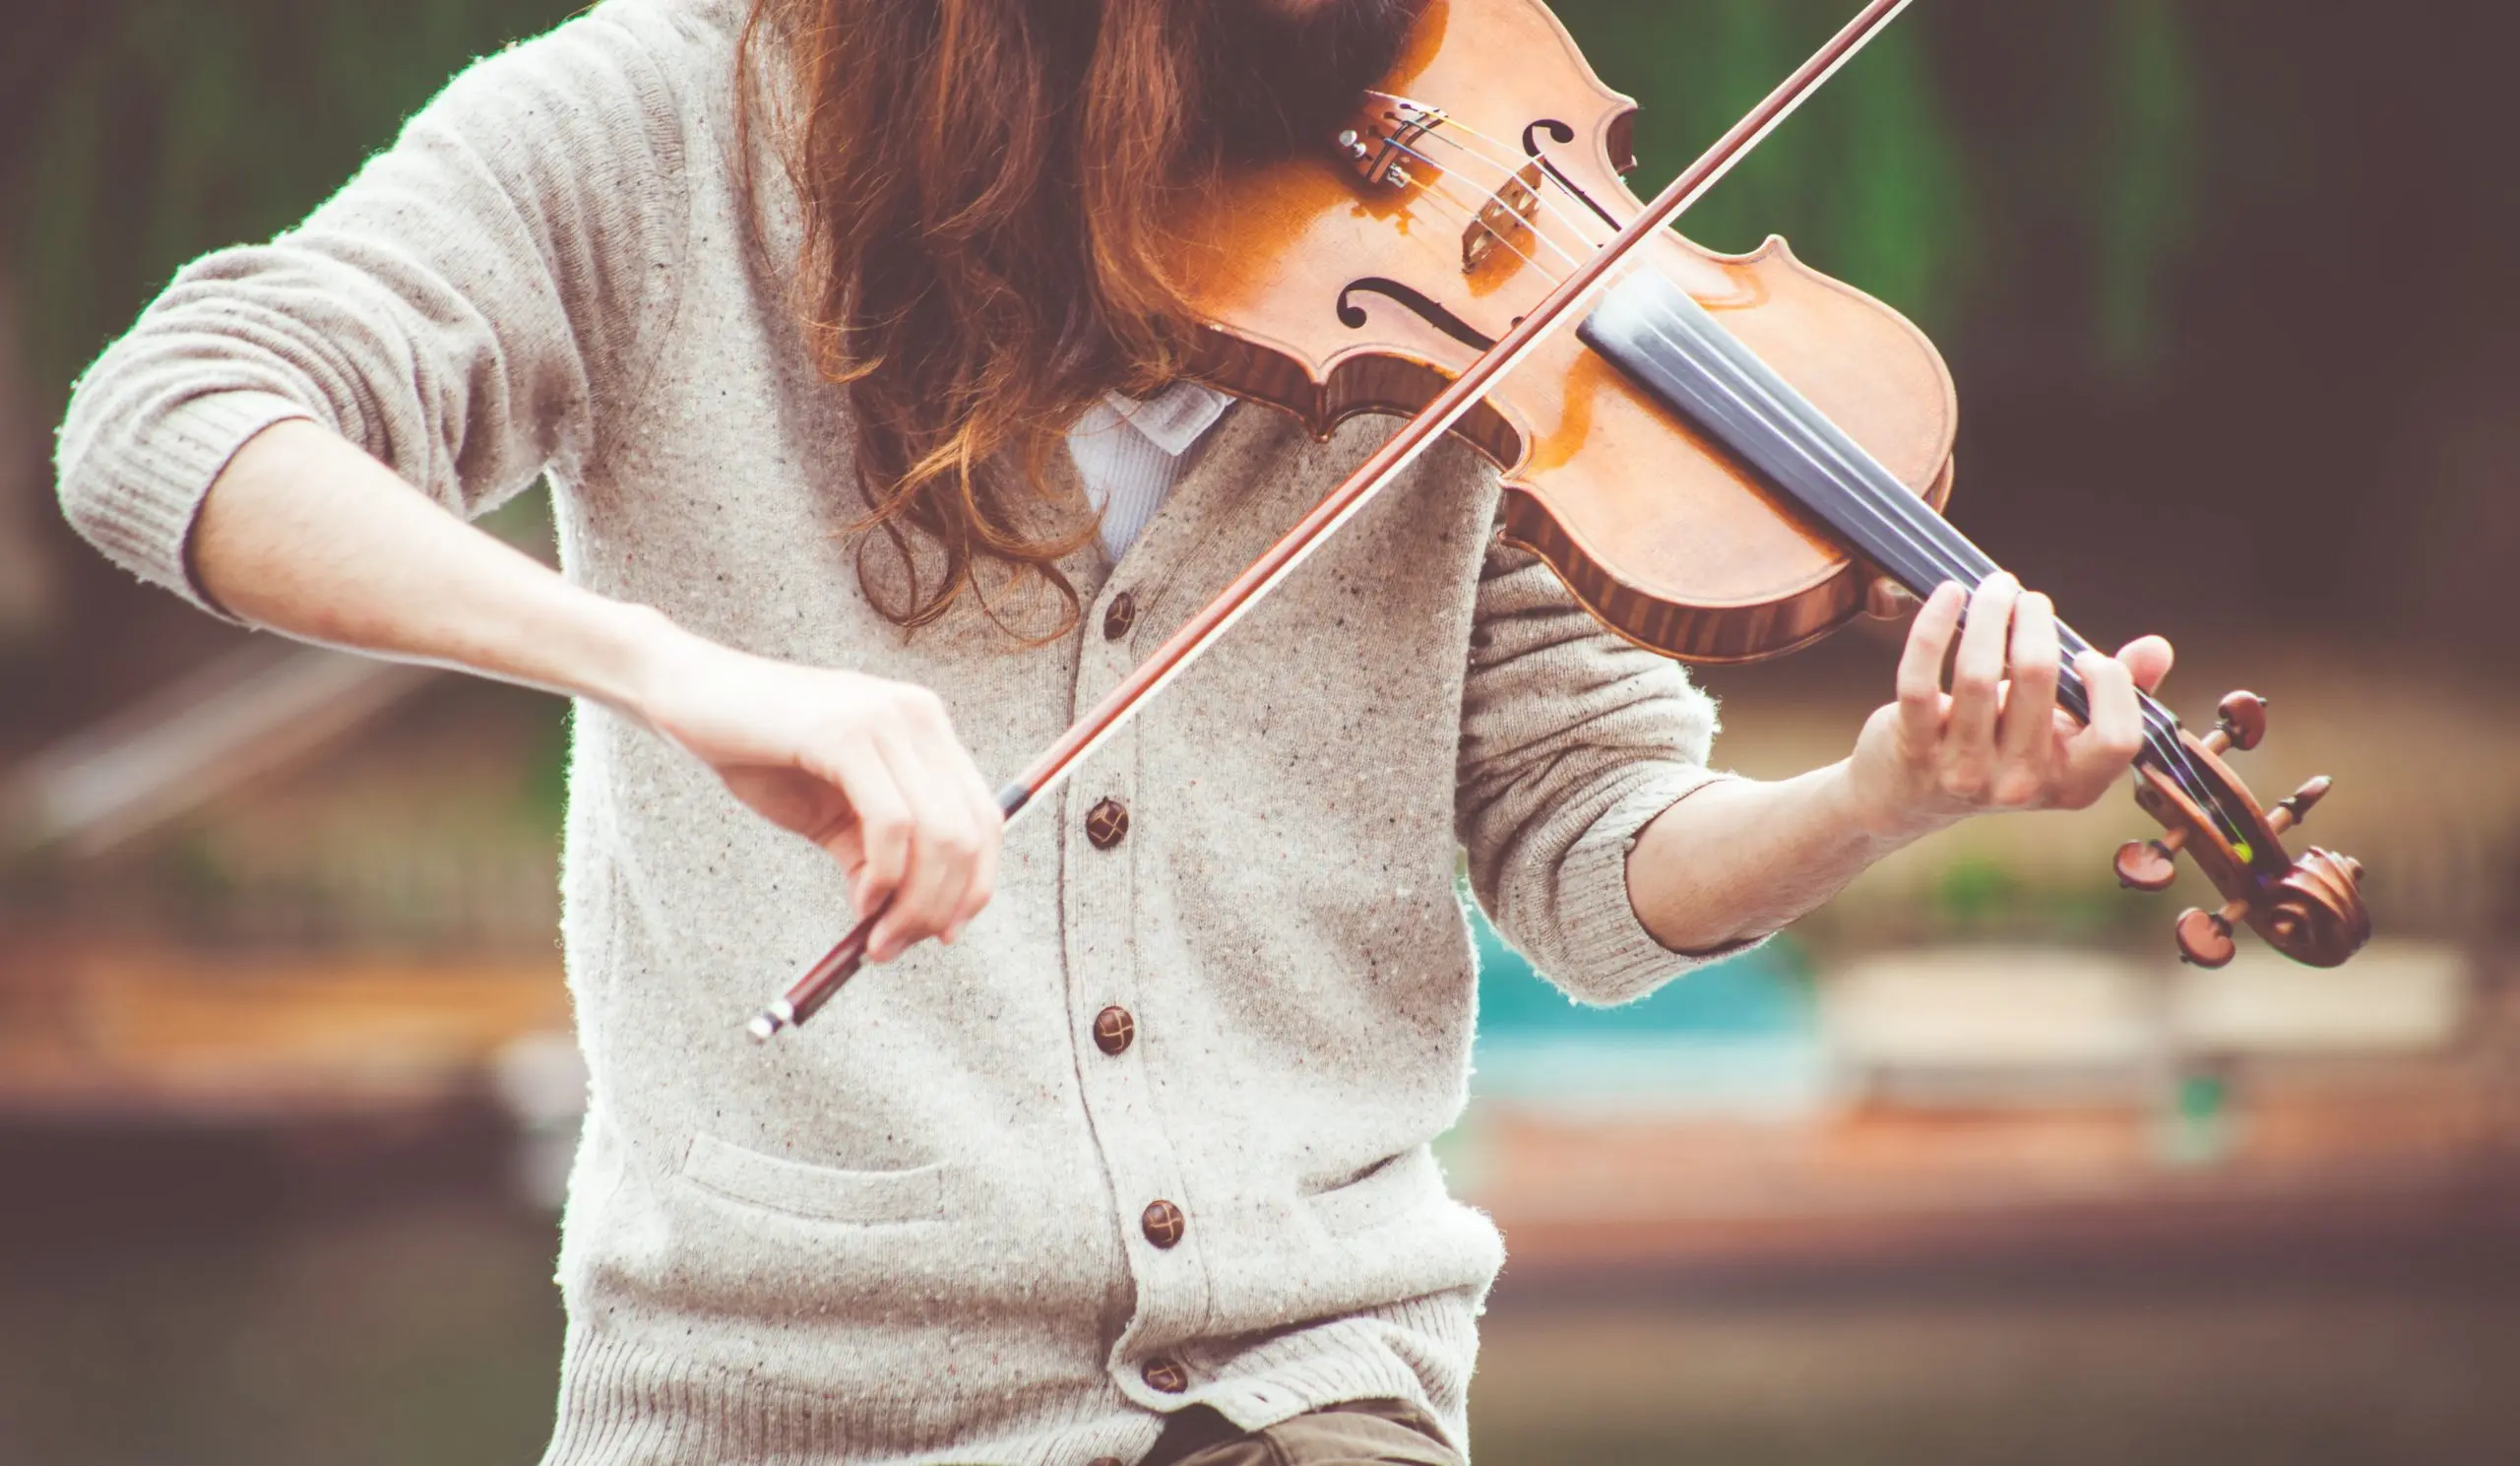 cursos de violin en la universidad de guadalajara vallarta - Qué carreras hay en el cuad